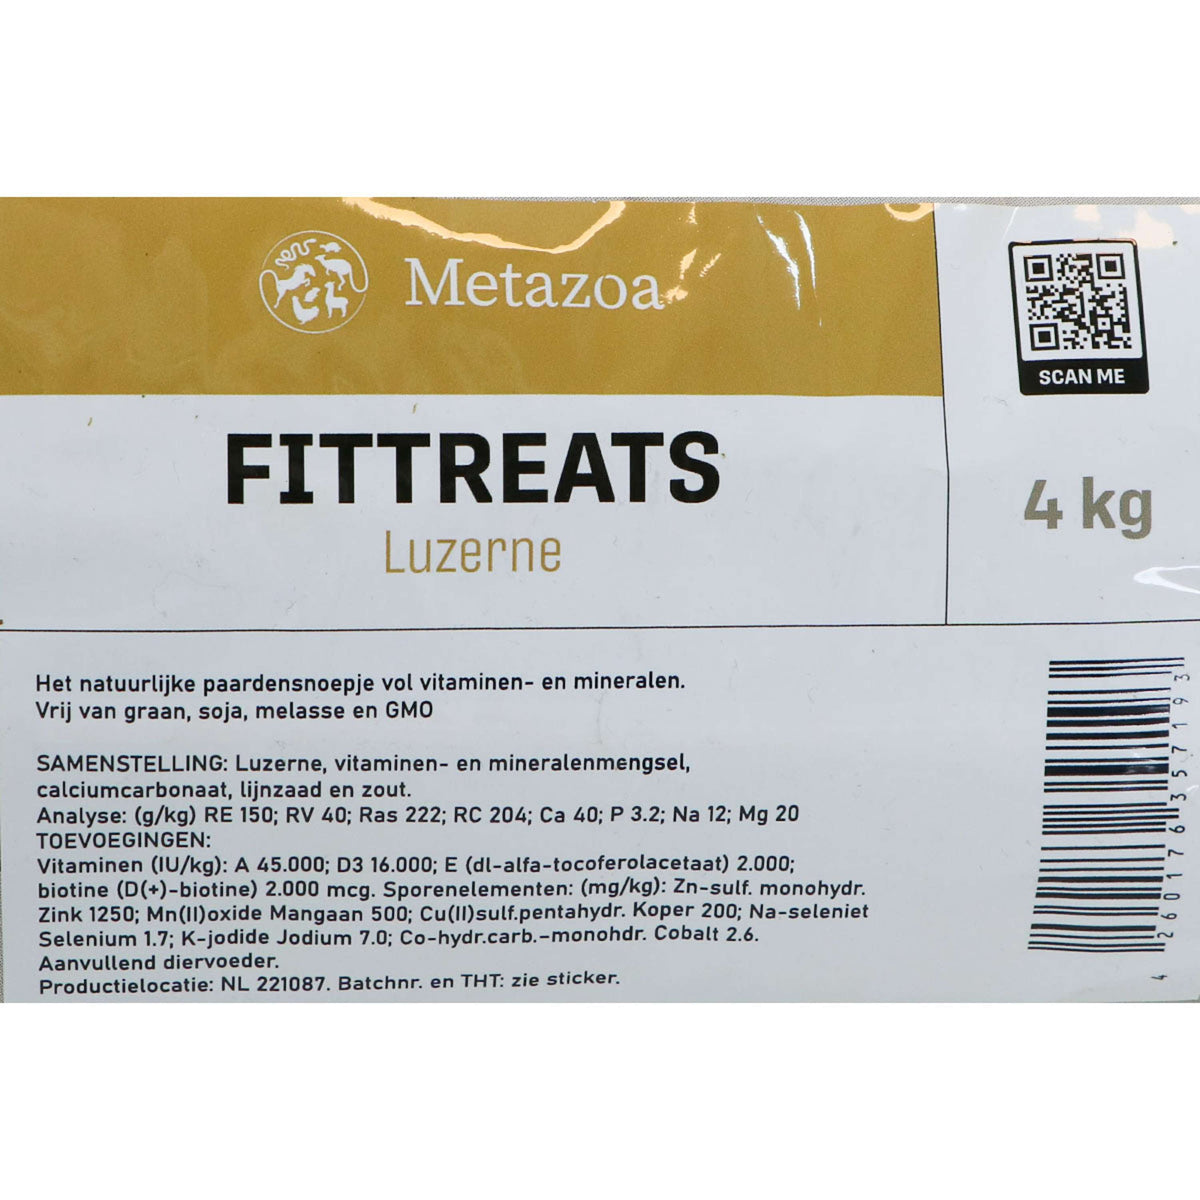 Metazoa FitTreats Luzerne